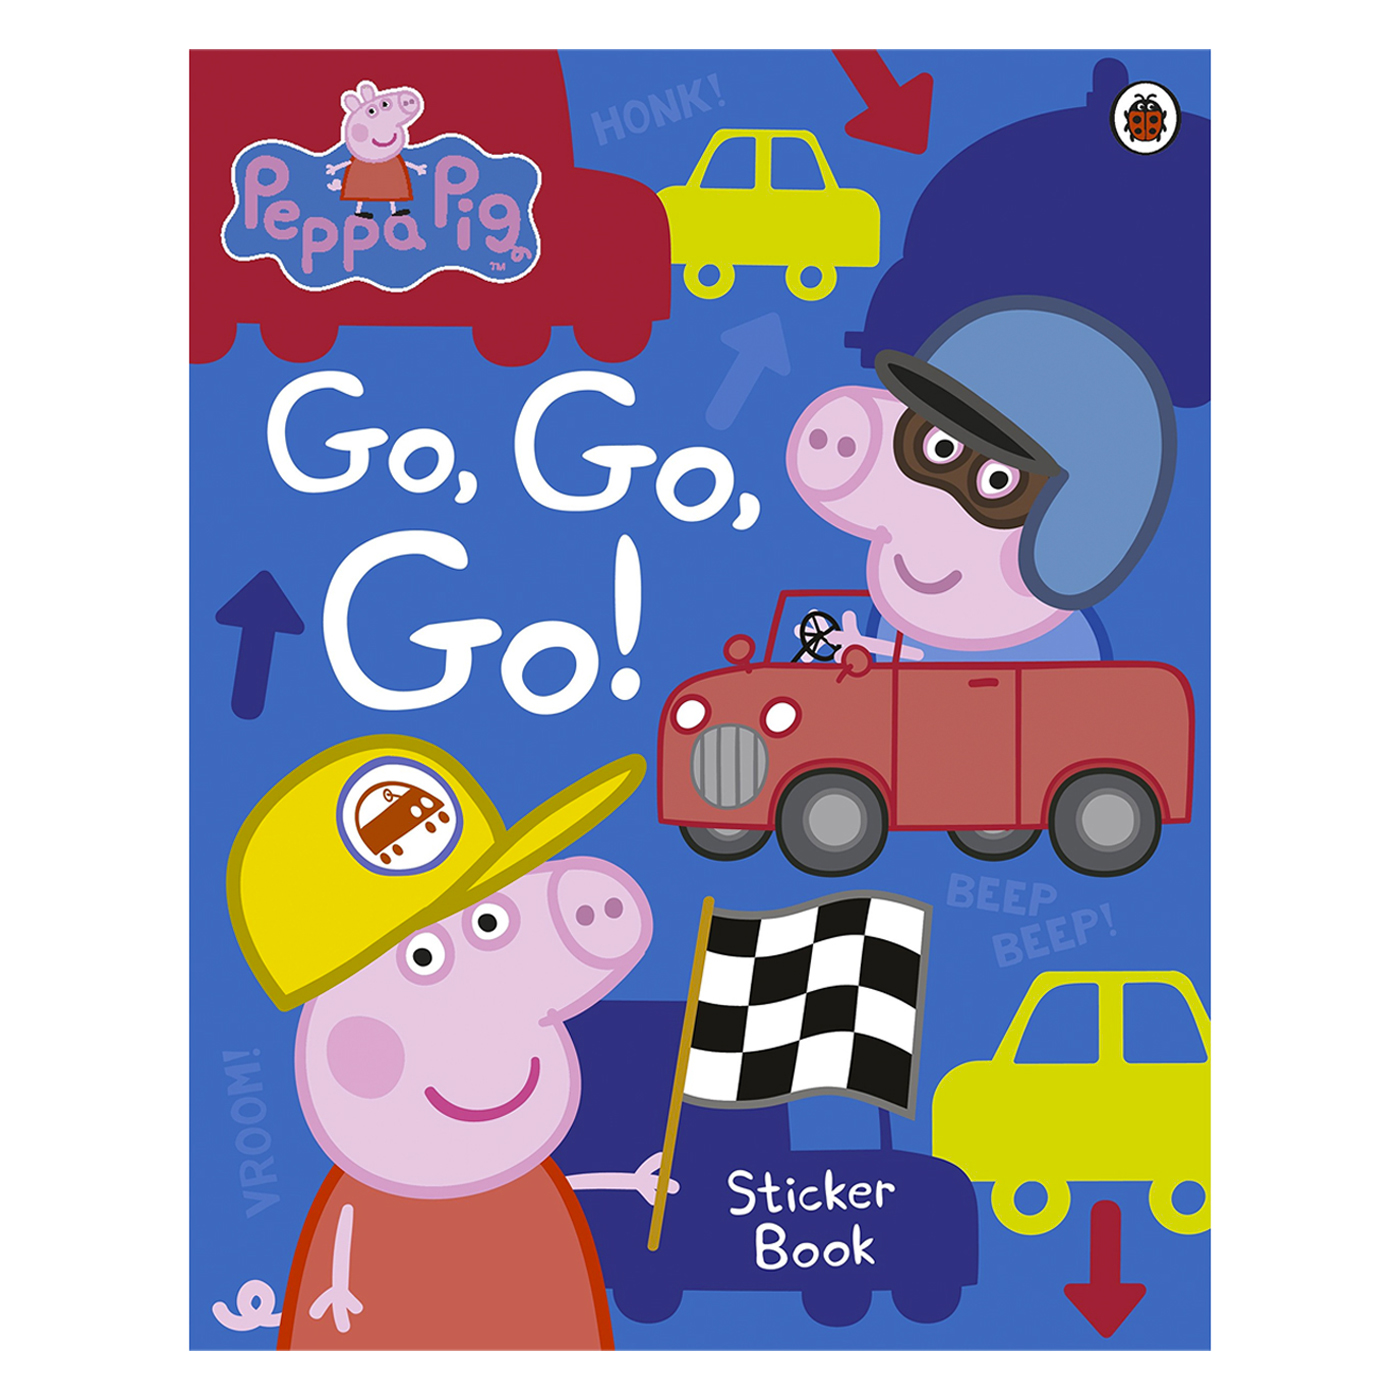  Peppa Pig: Go, Go, Go! Sticker Book